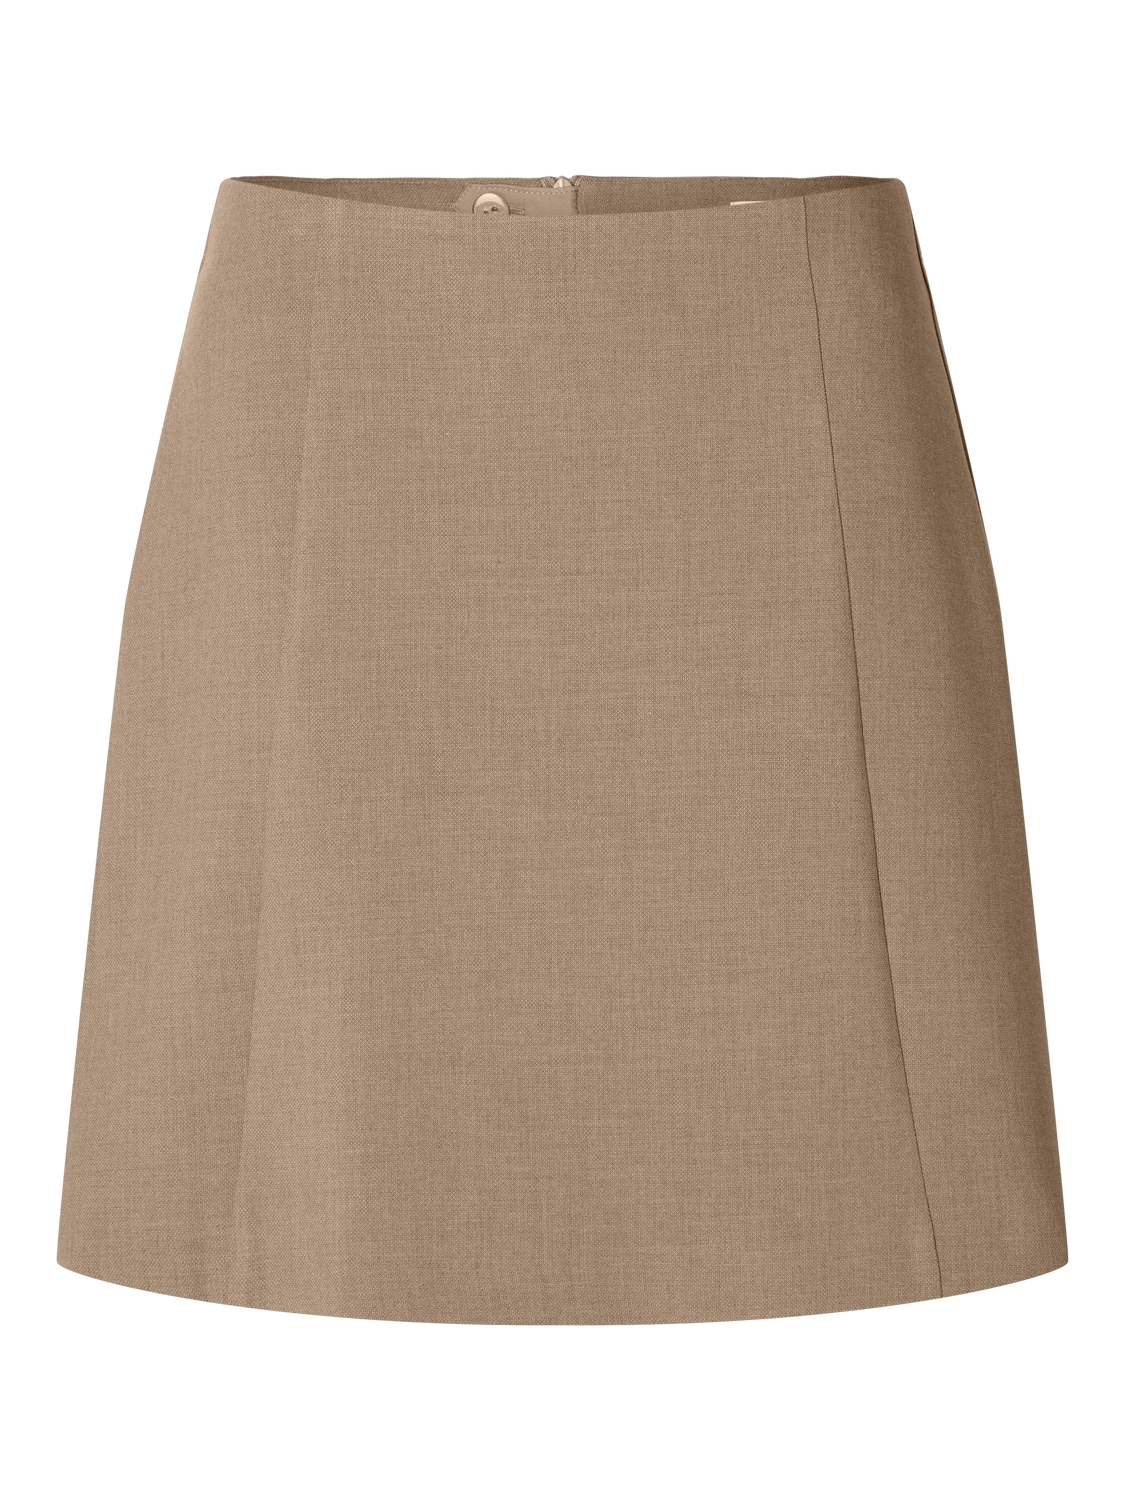 SLFRITA Skirt - Camel